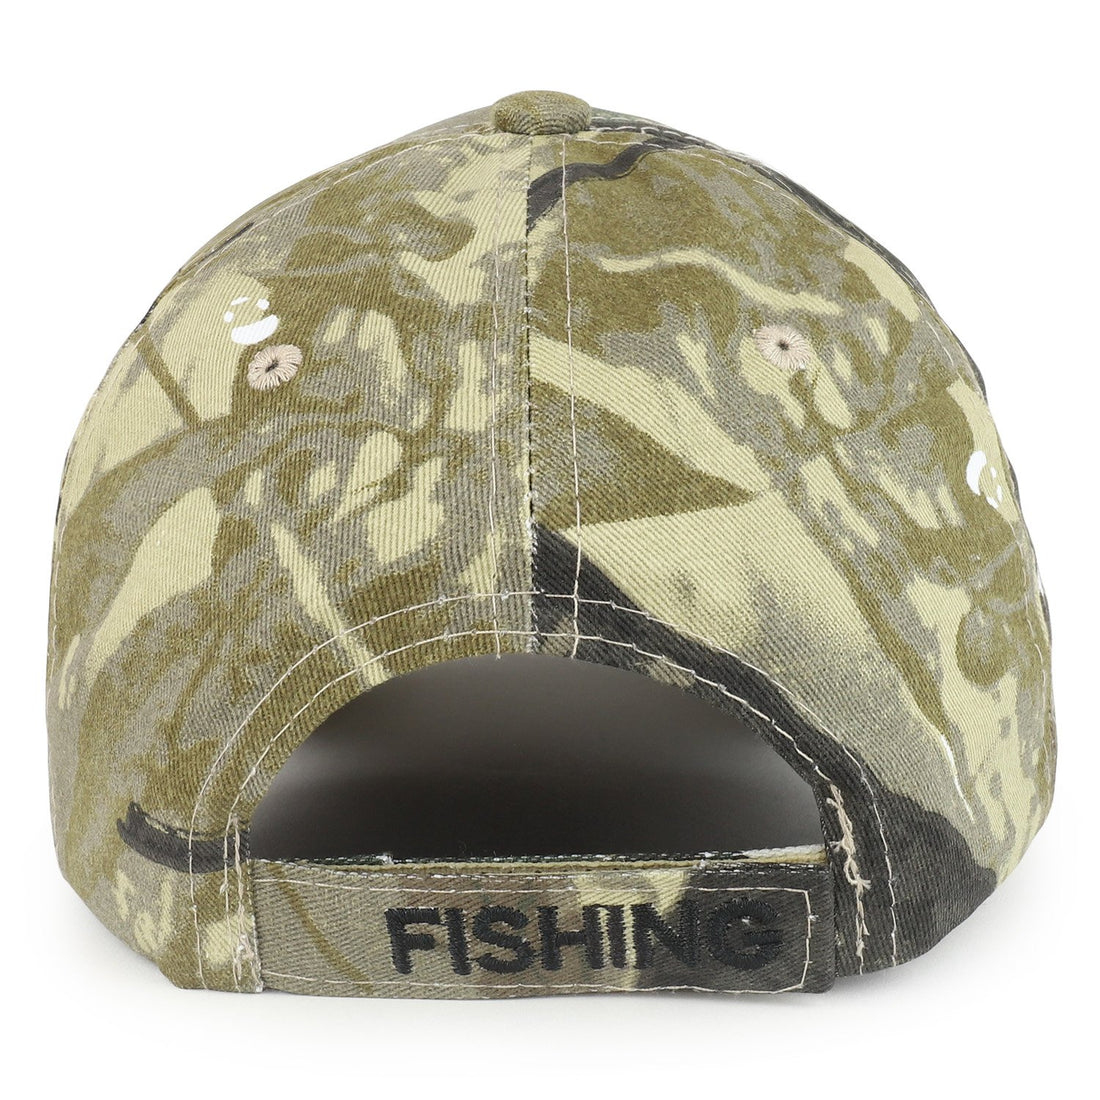  Fishing Hats - Sports / Fishing Hats / Fishing